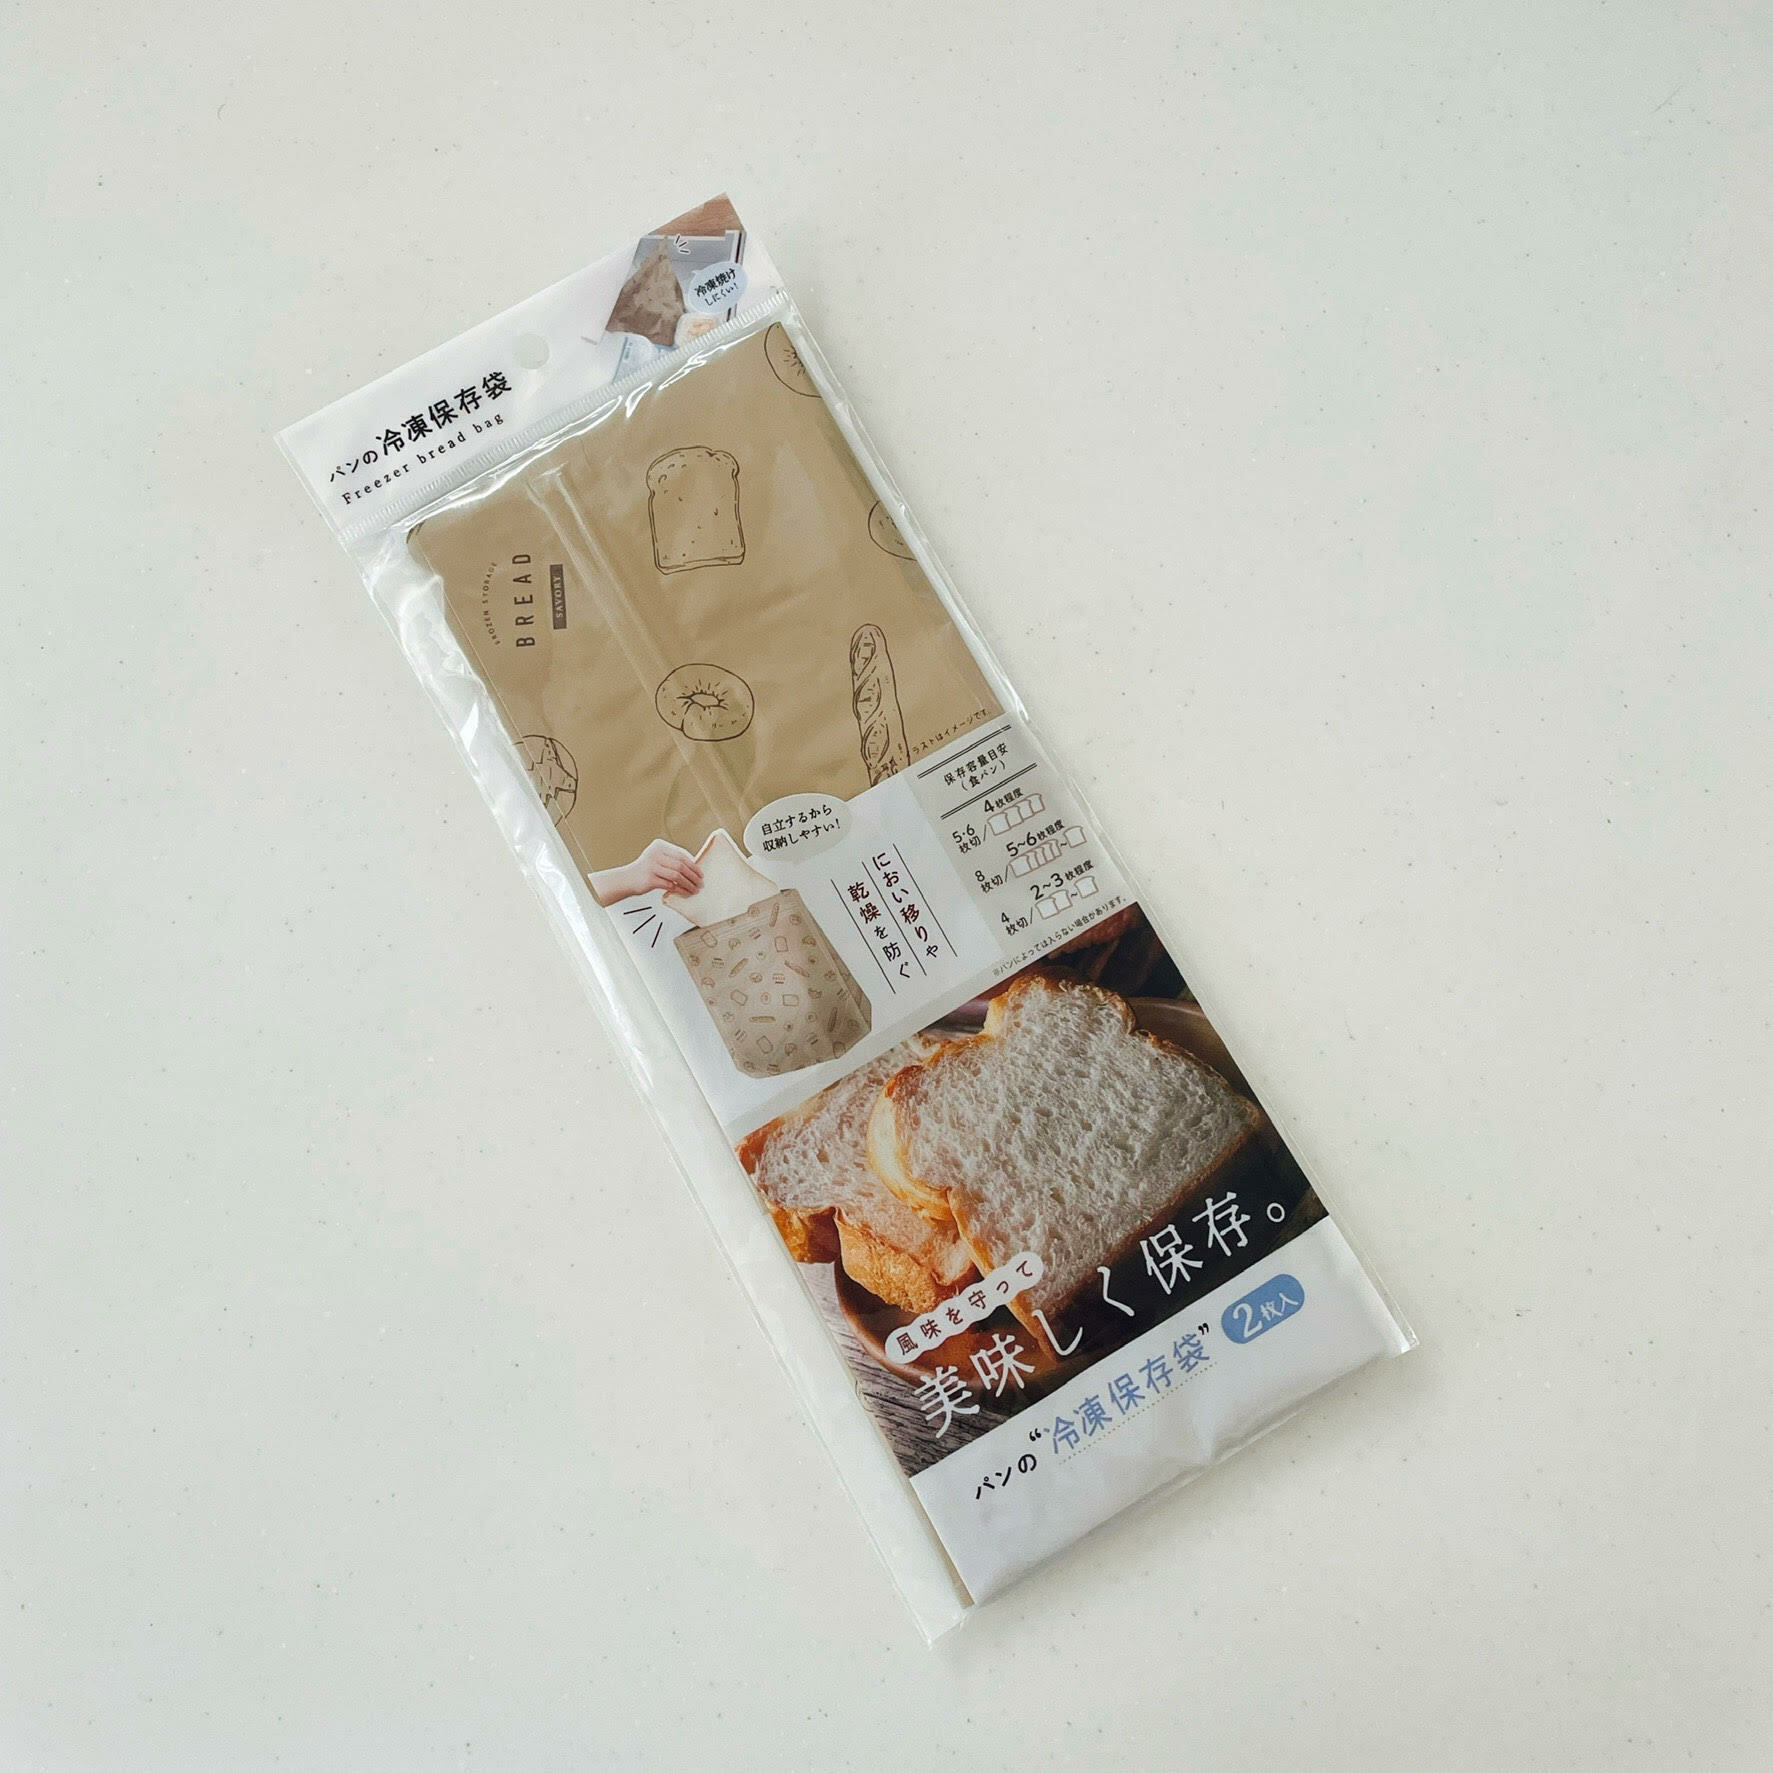 ダイソーで見つけたパン用の保存袋